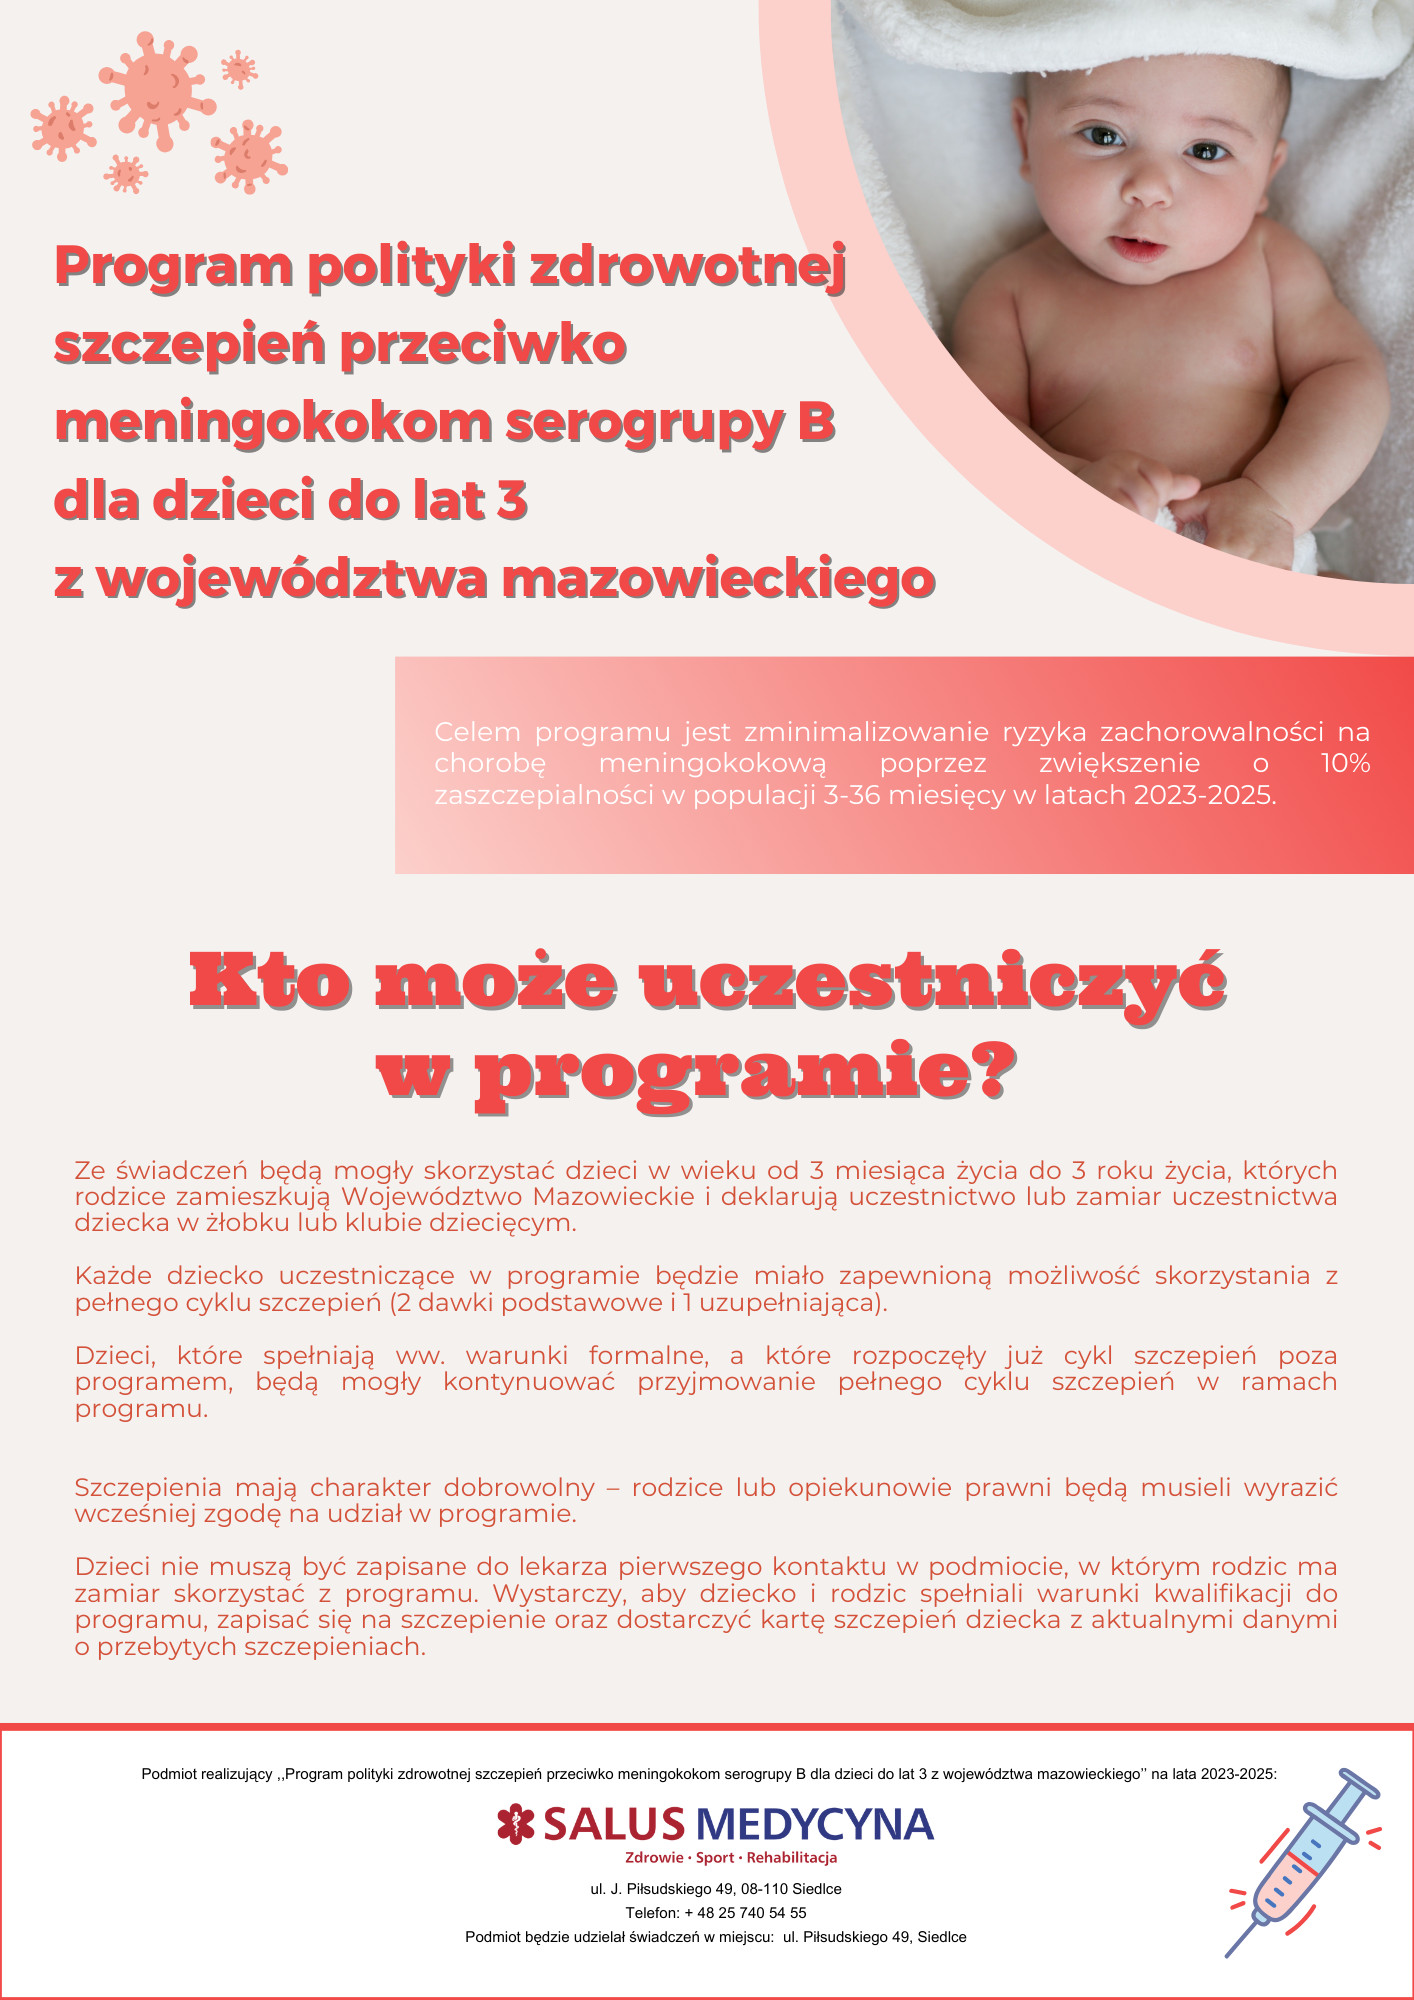 Plakat z niemowlakiem mówiący o szczepieniach